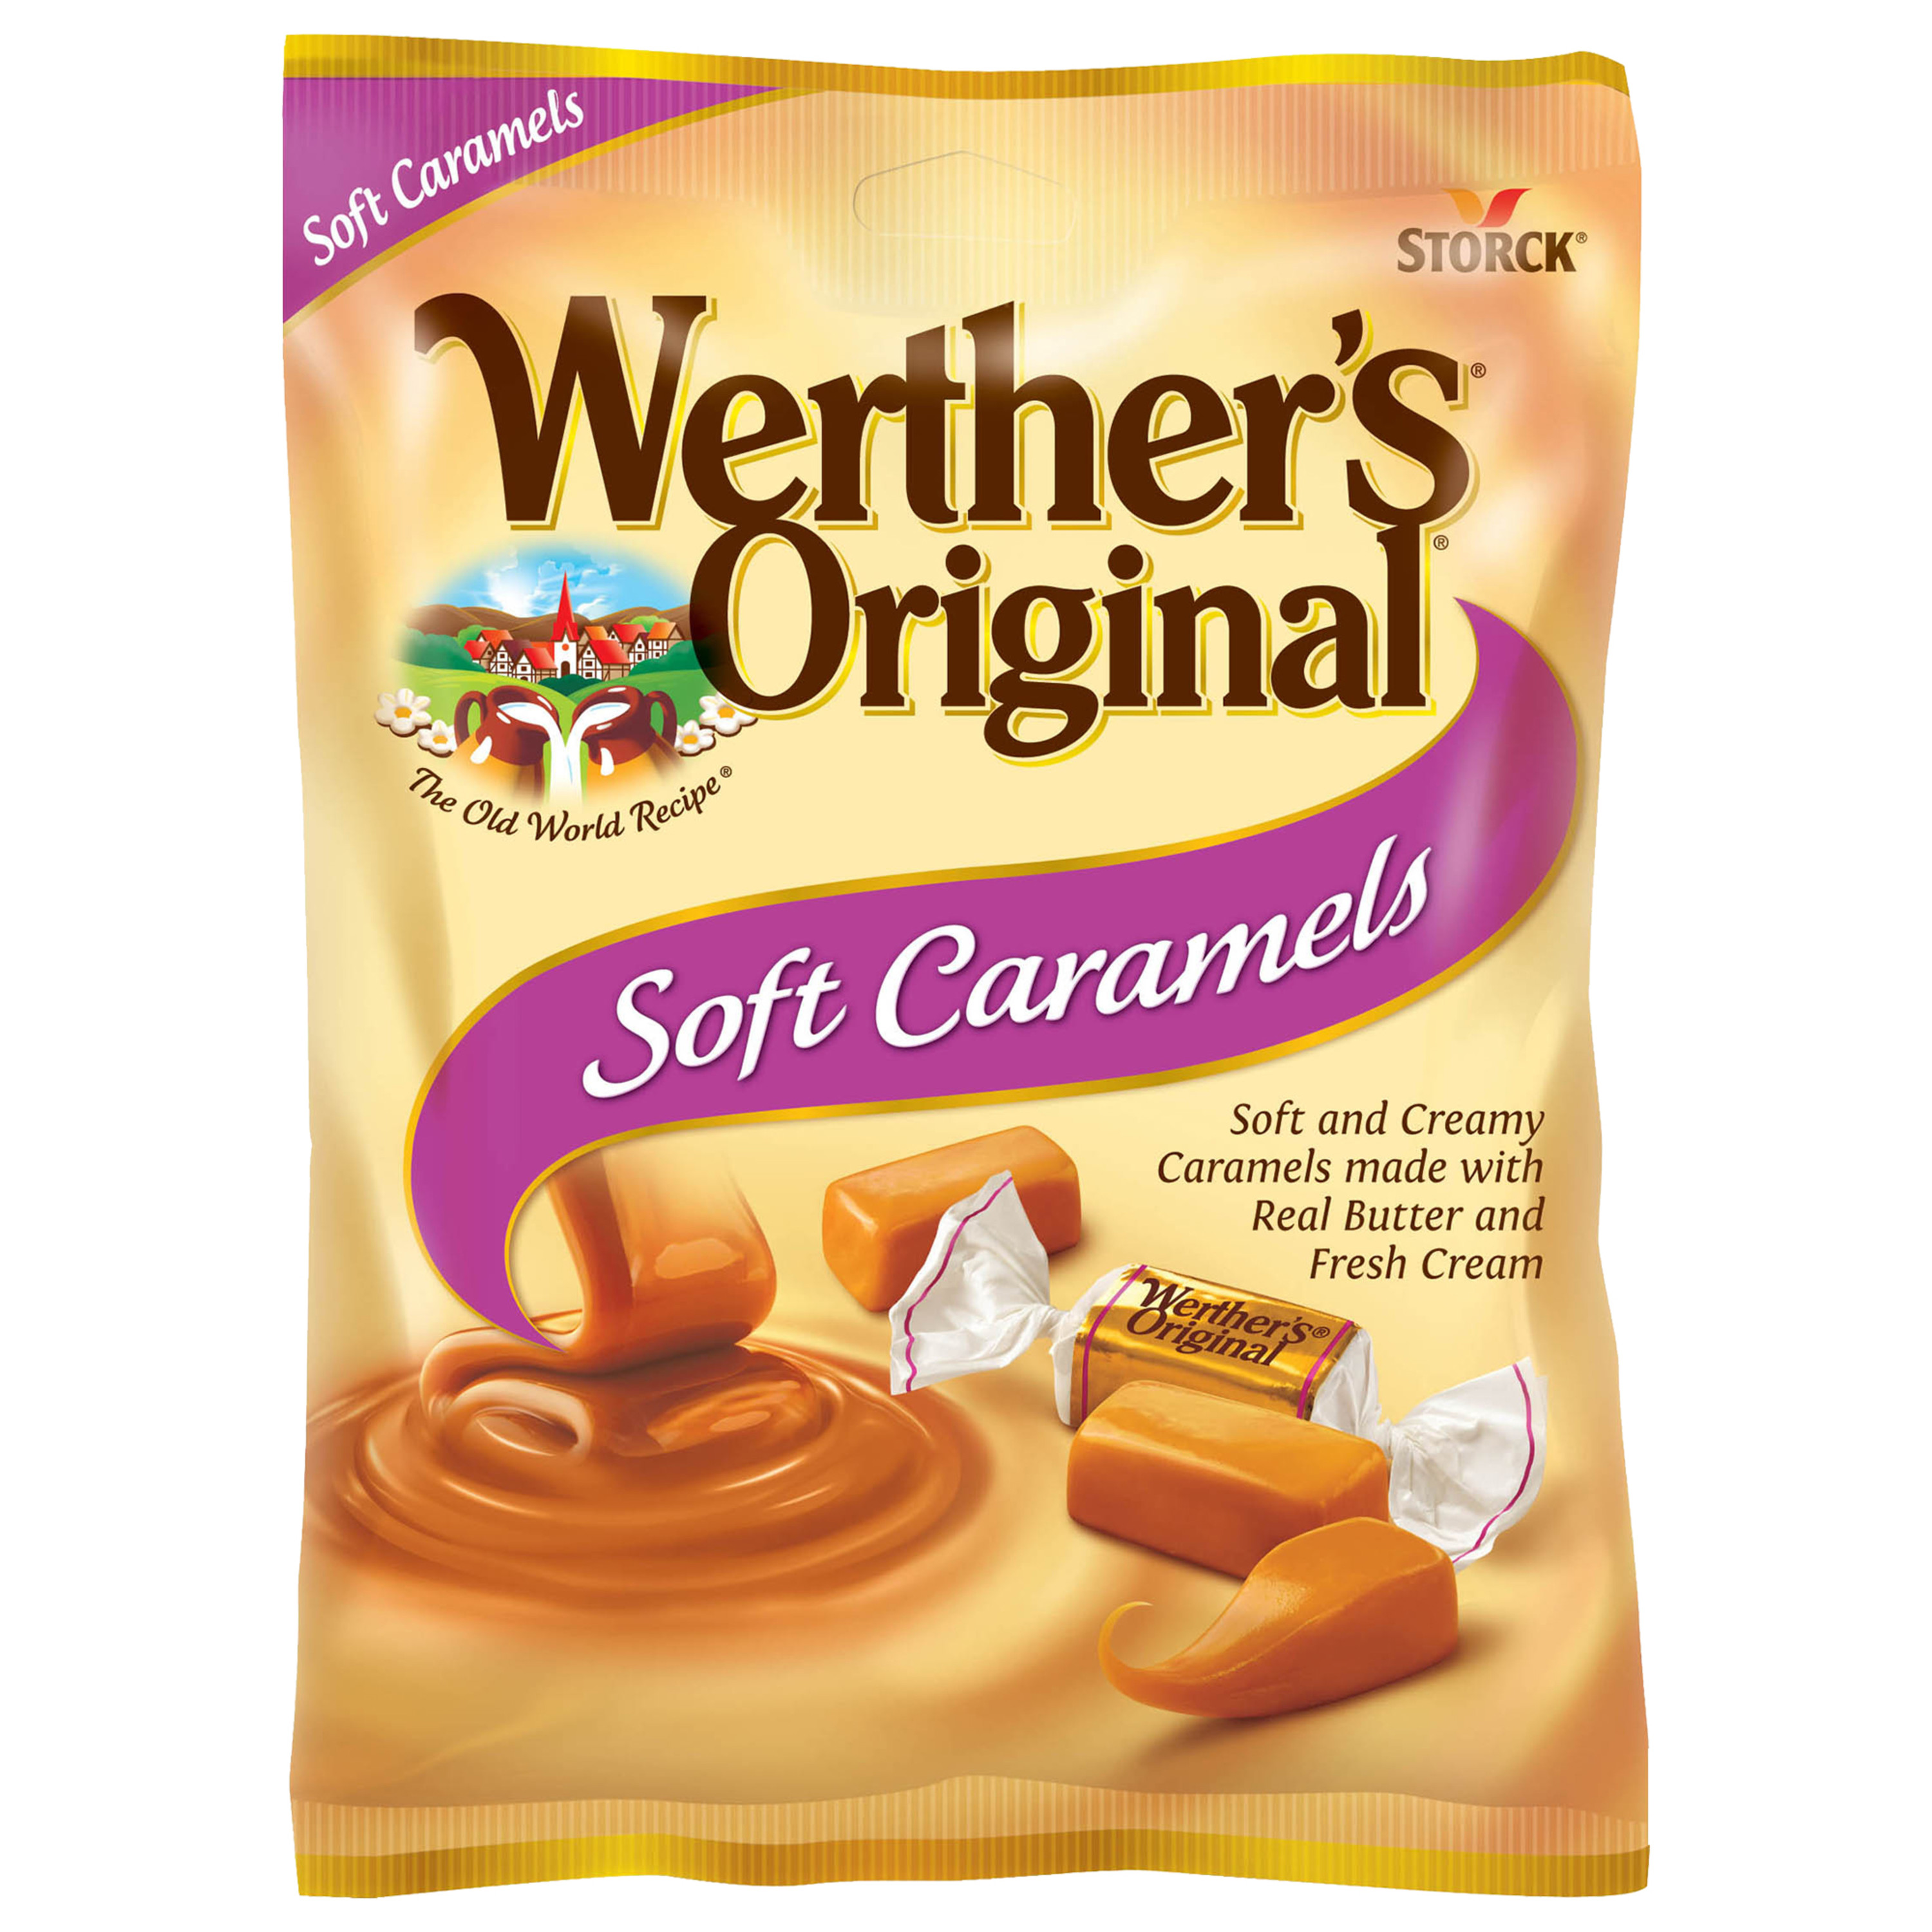 Storck Werther's Original Soft Caramels, 4.51 oz - image 2 of 6